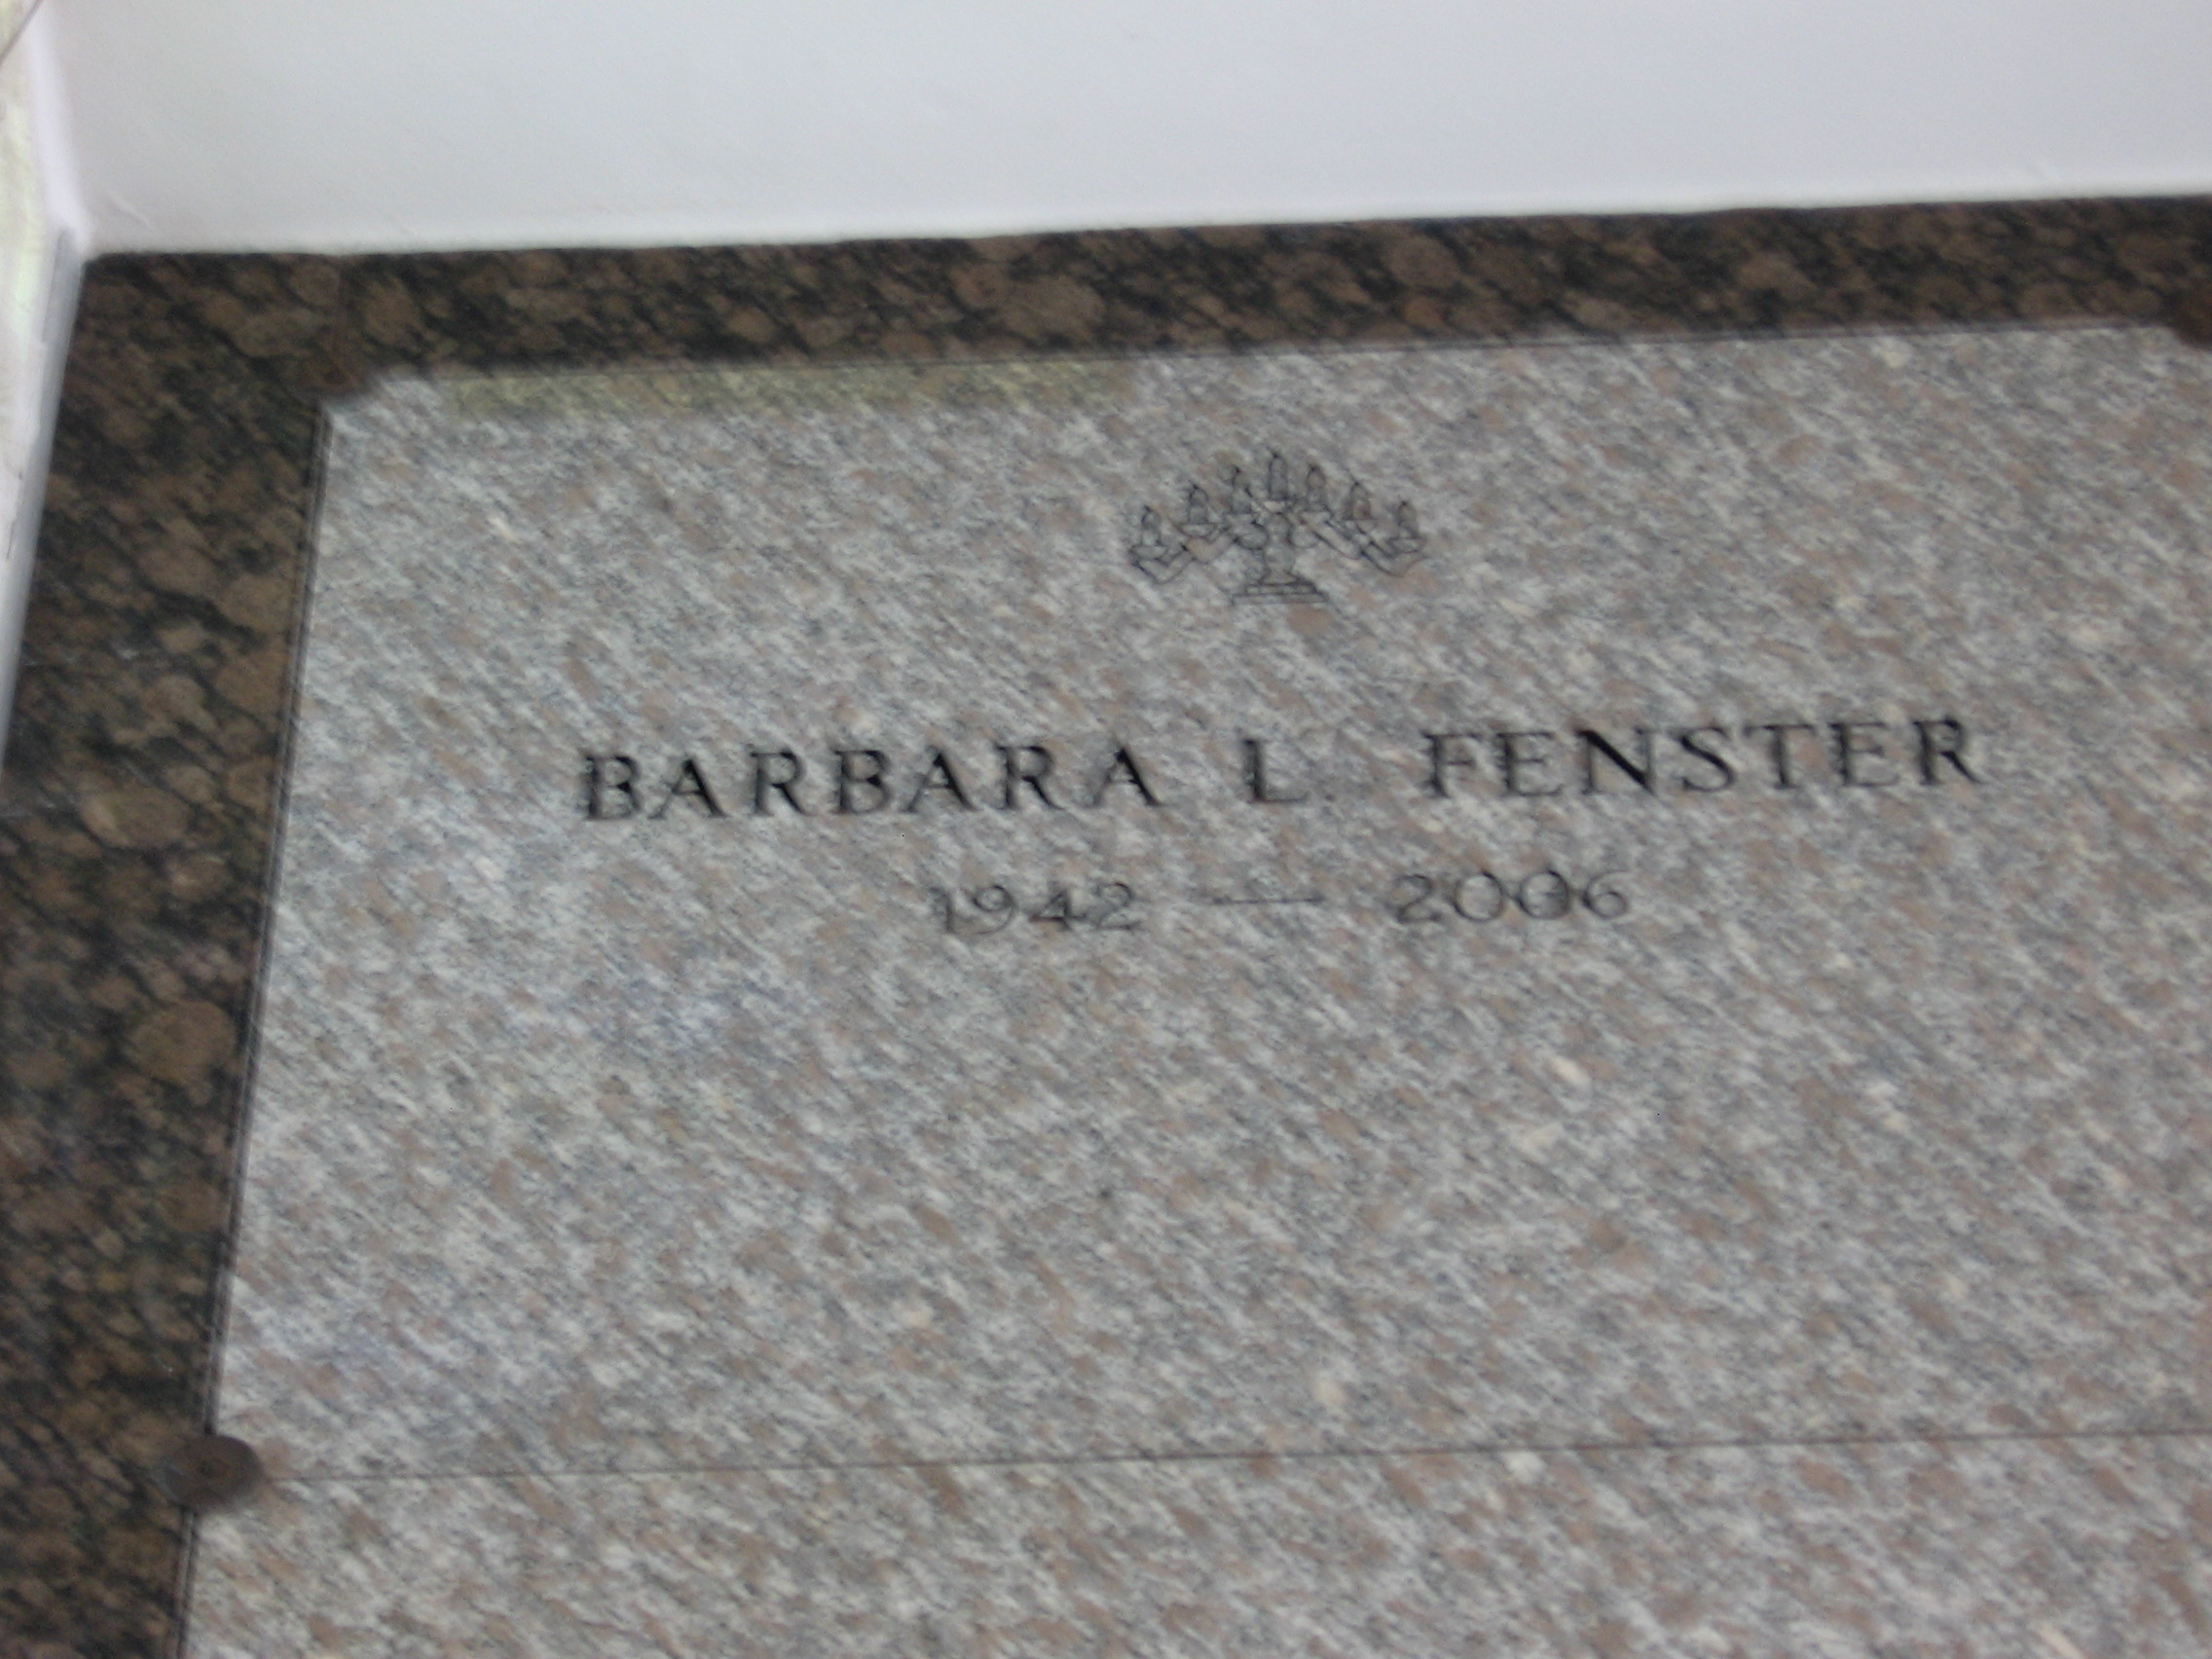 Barbara L Fenster